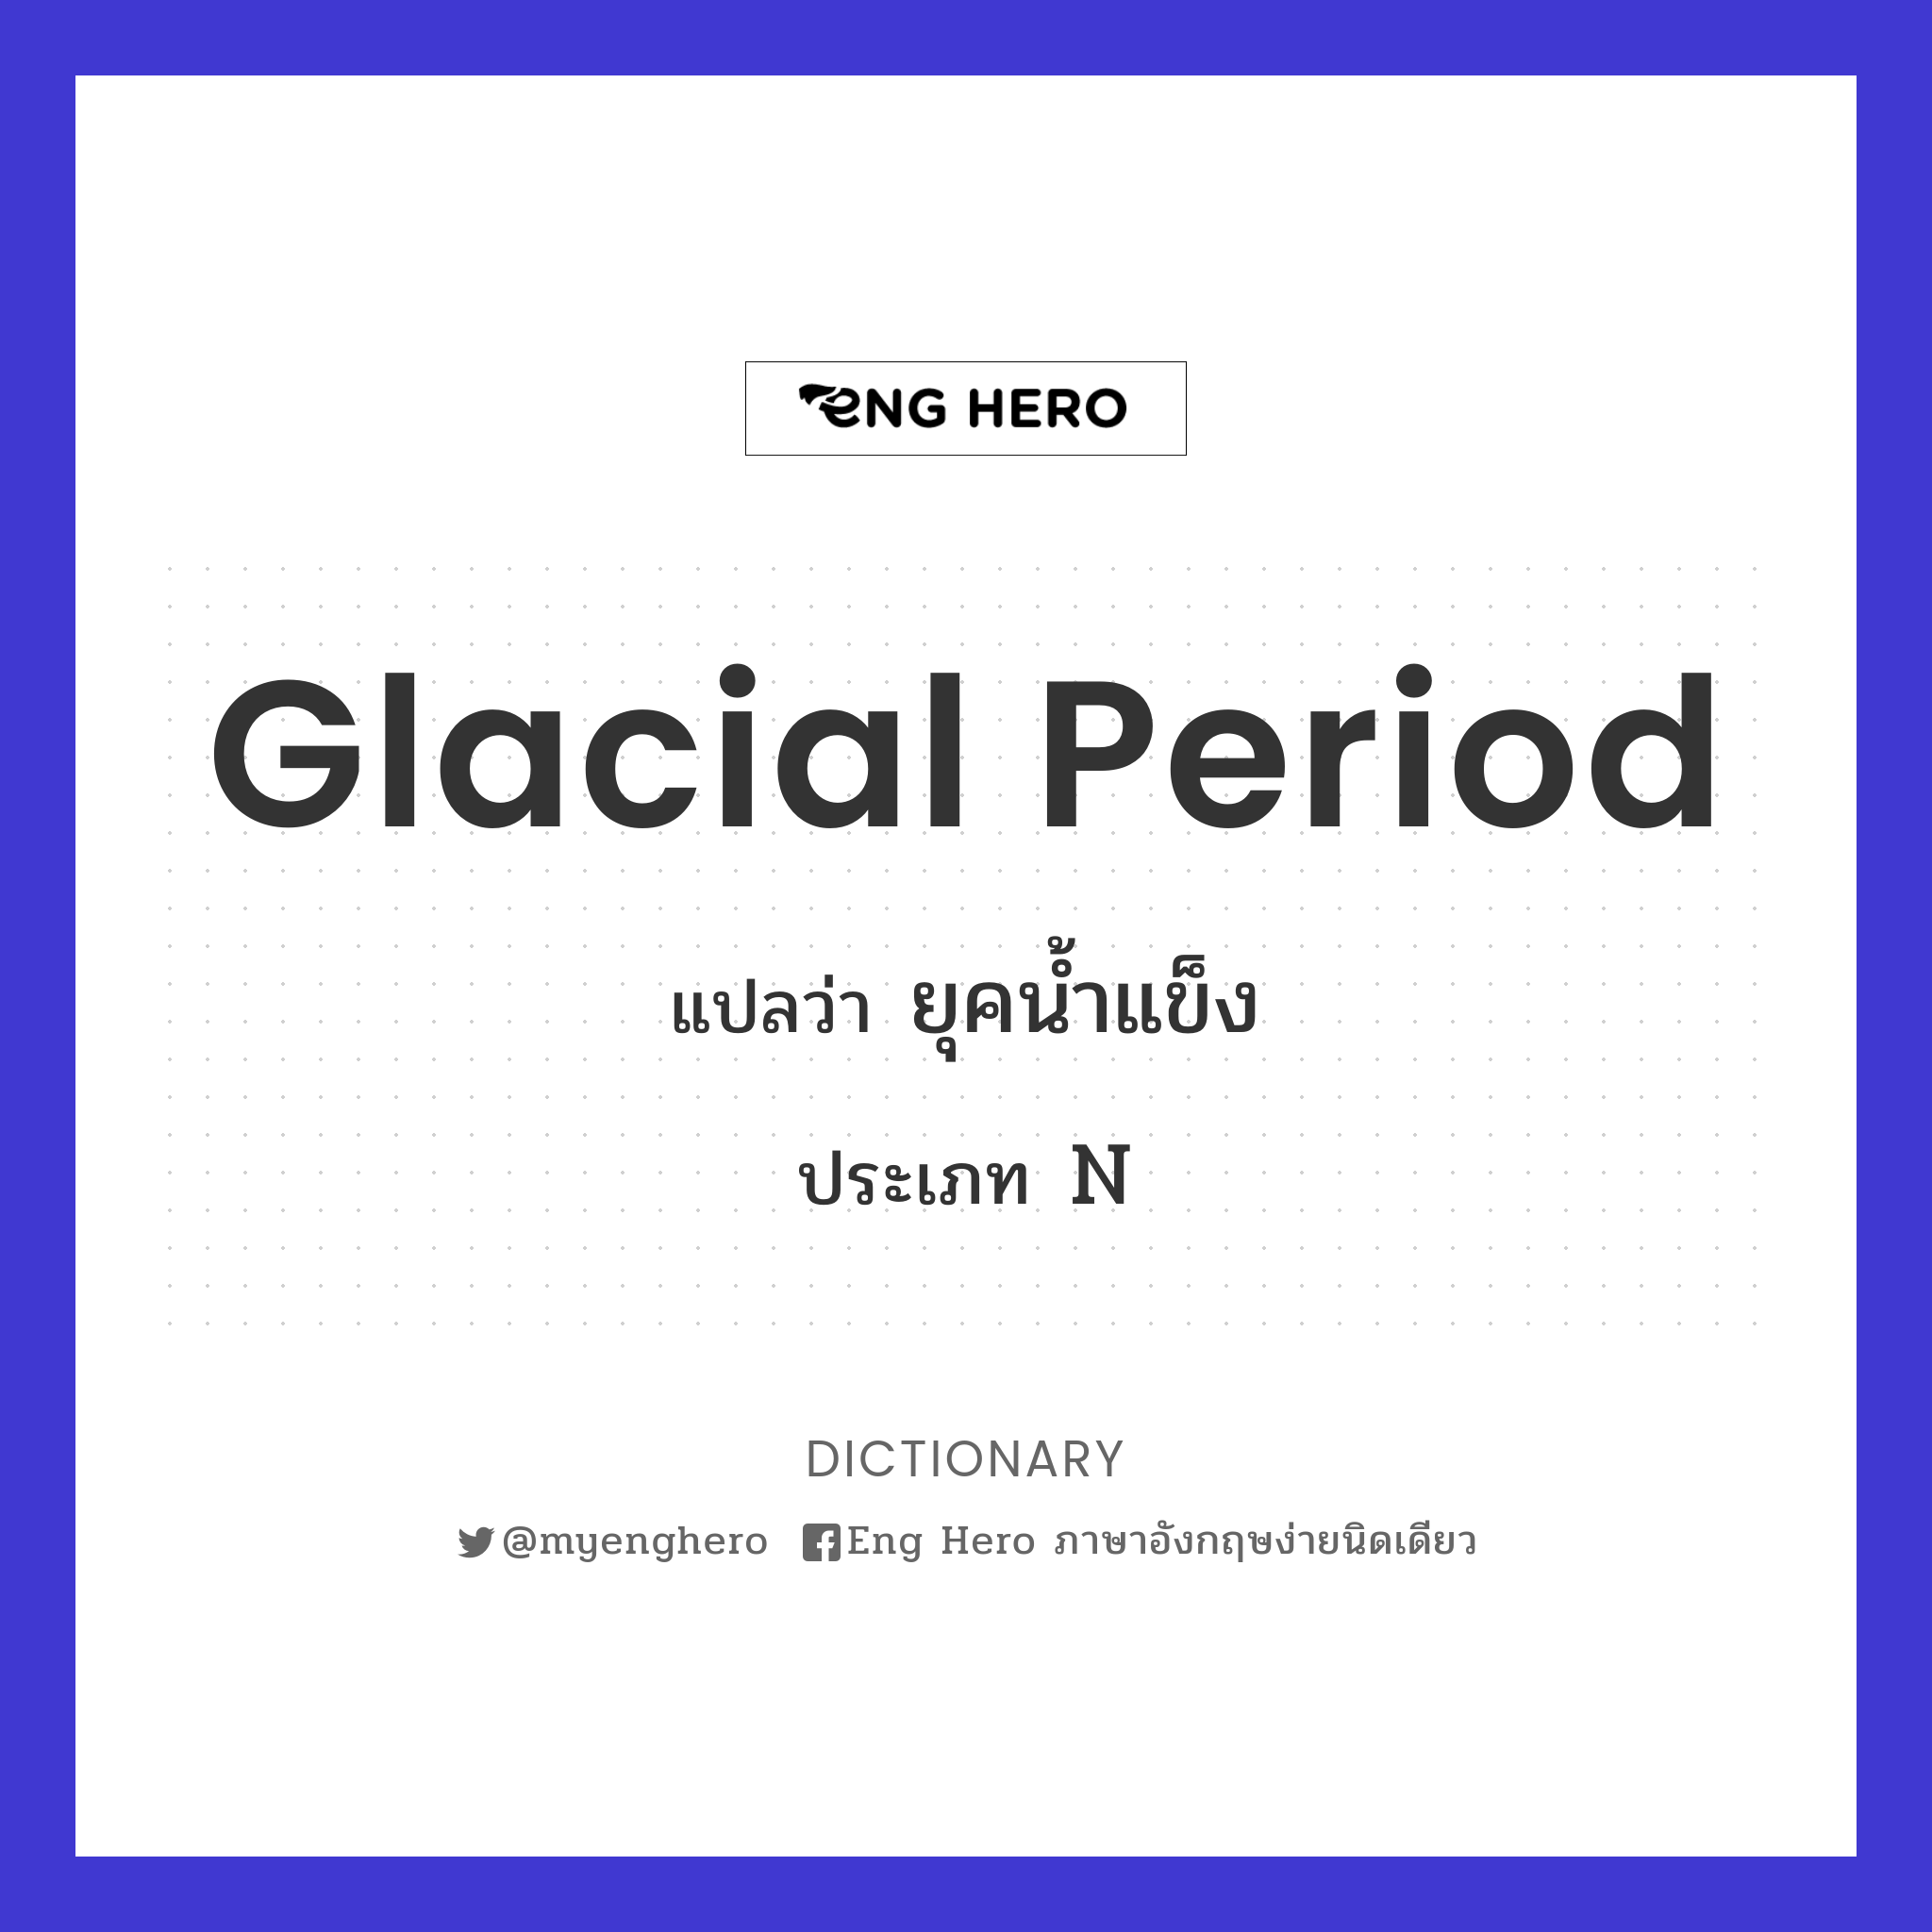 glacial period